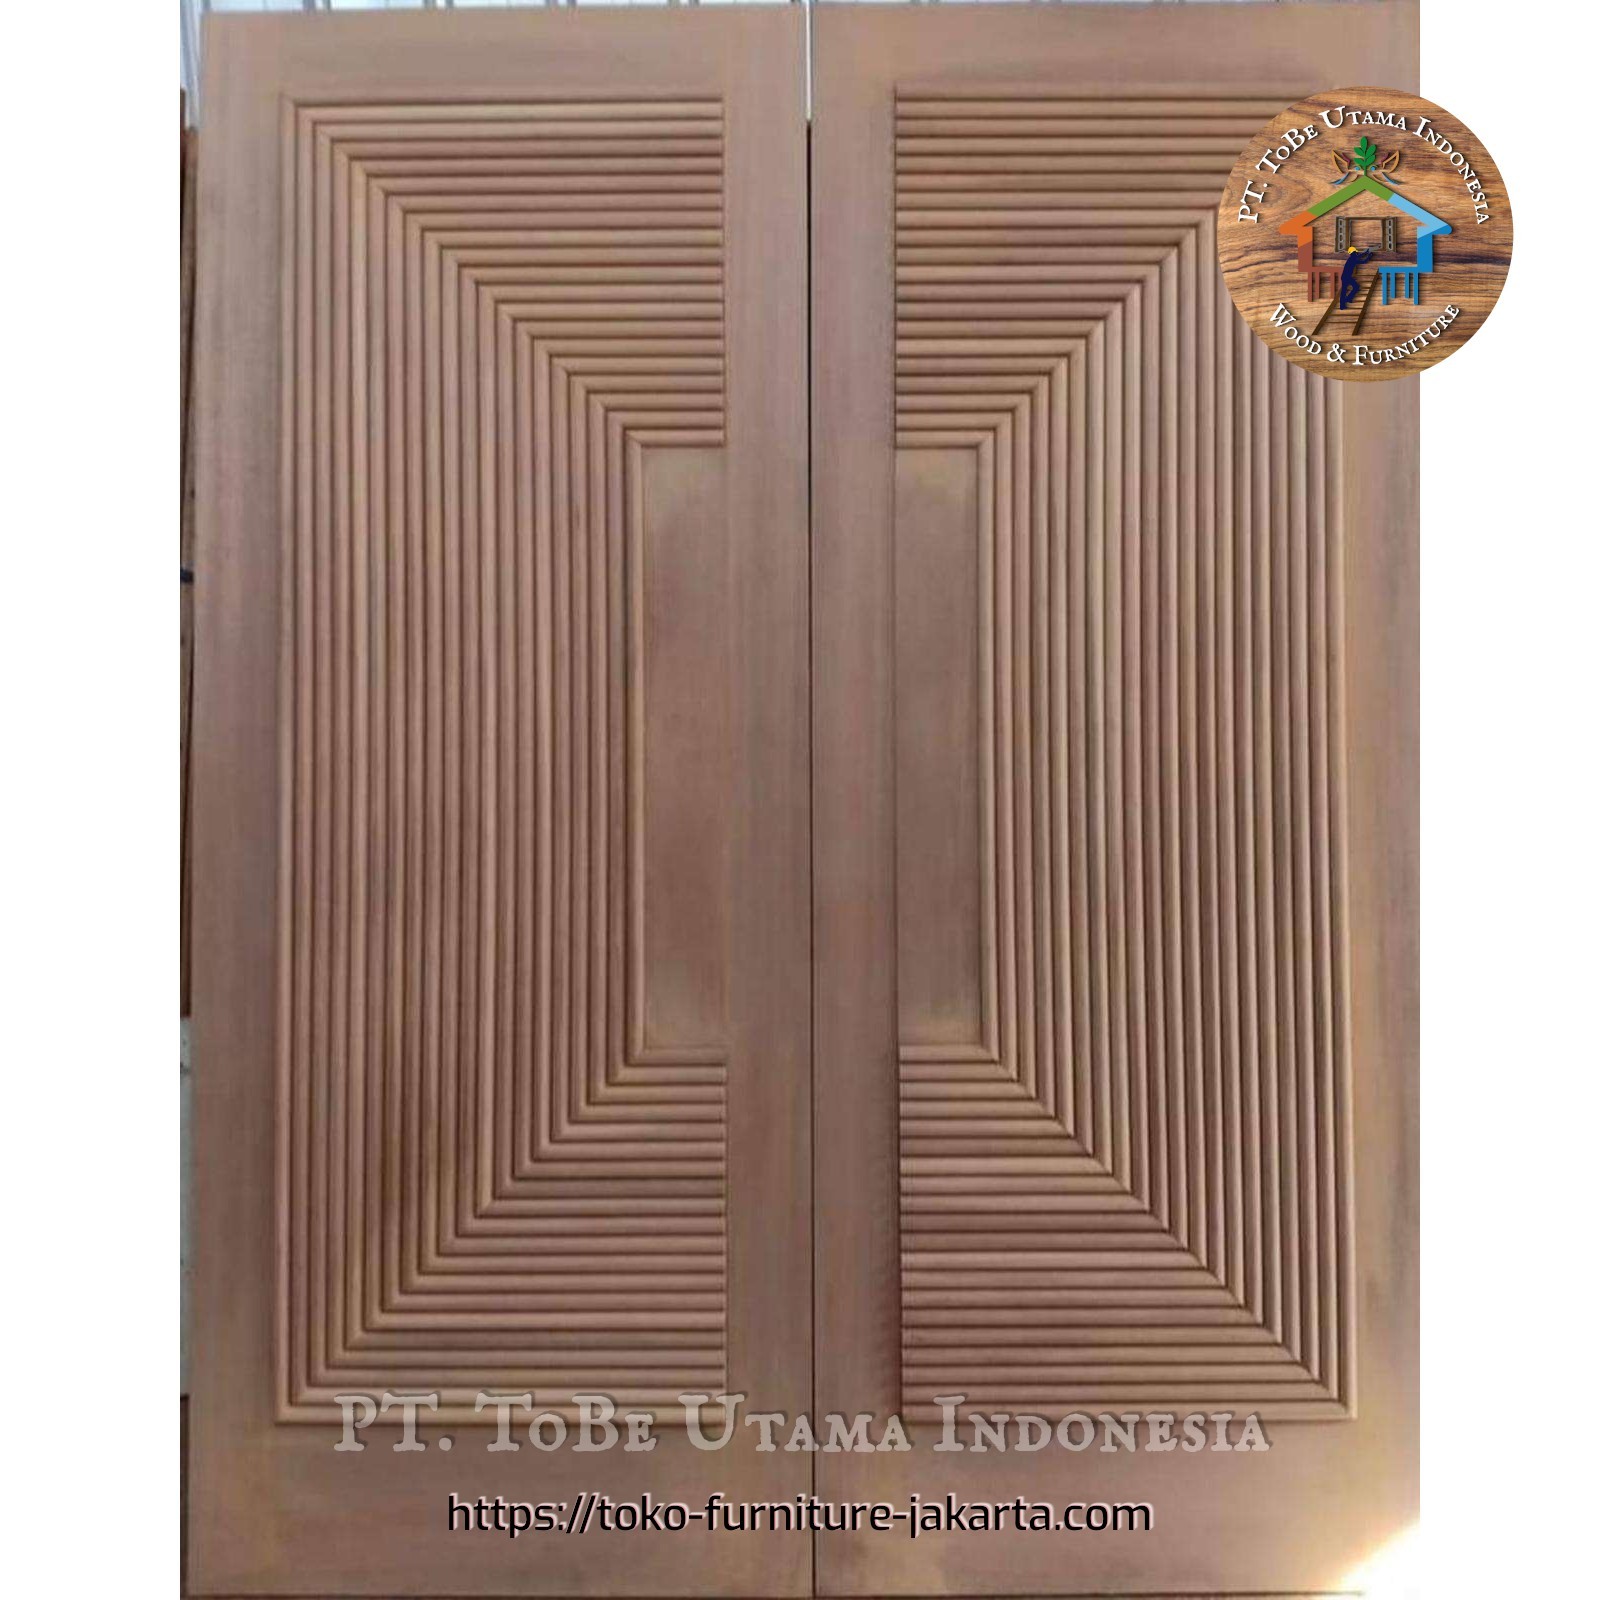 Doors: Singgasana Doors made of mahogany wood, meranti wood (image 1 of 1).